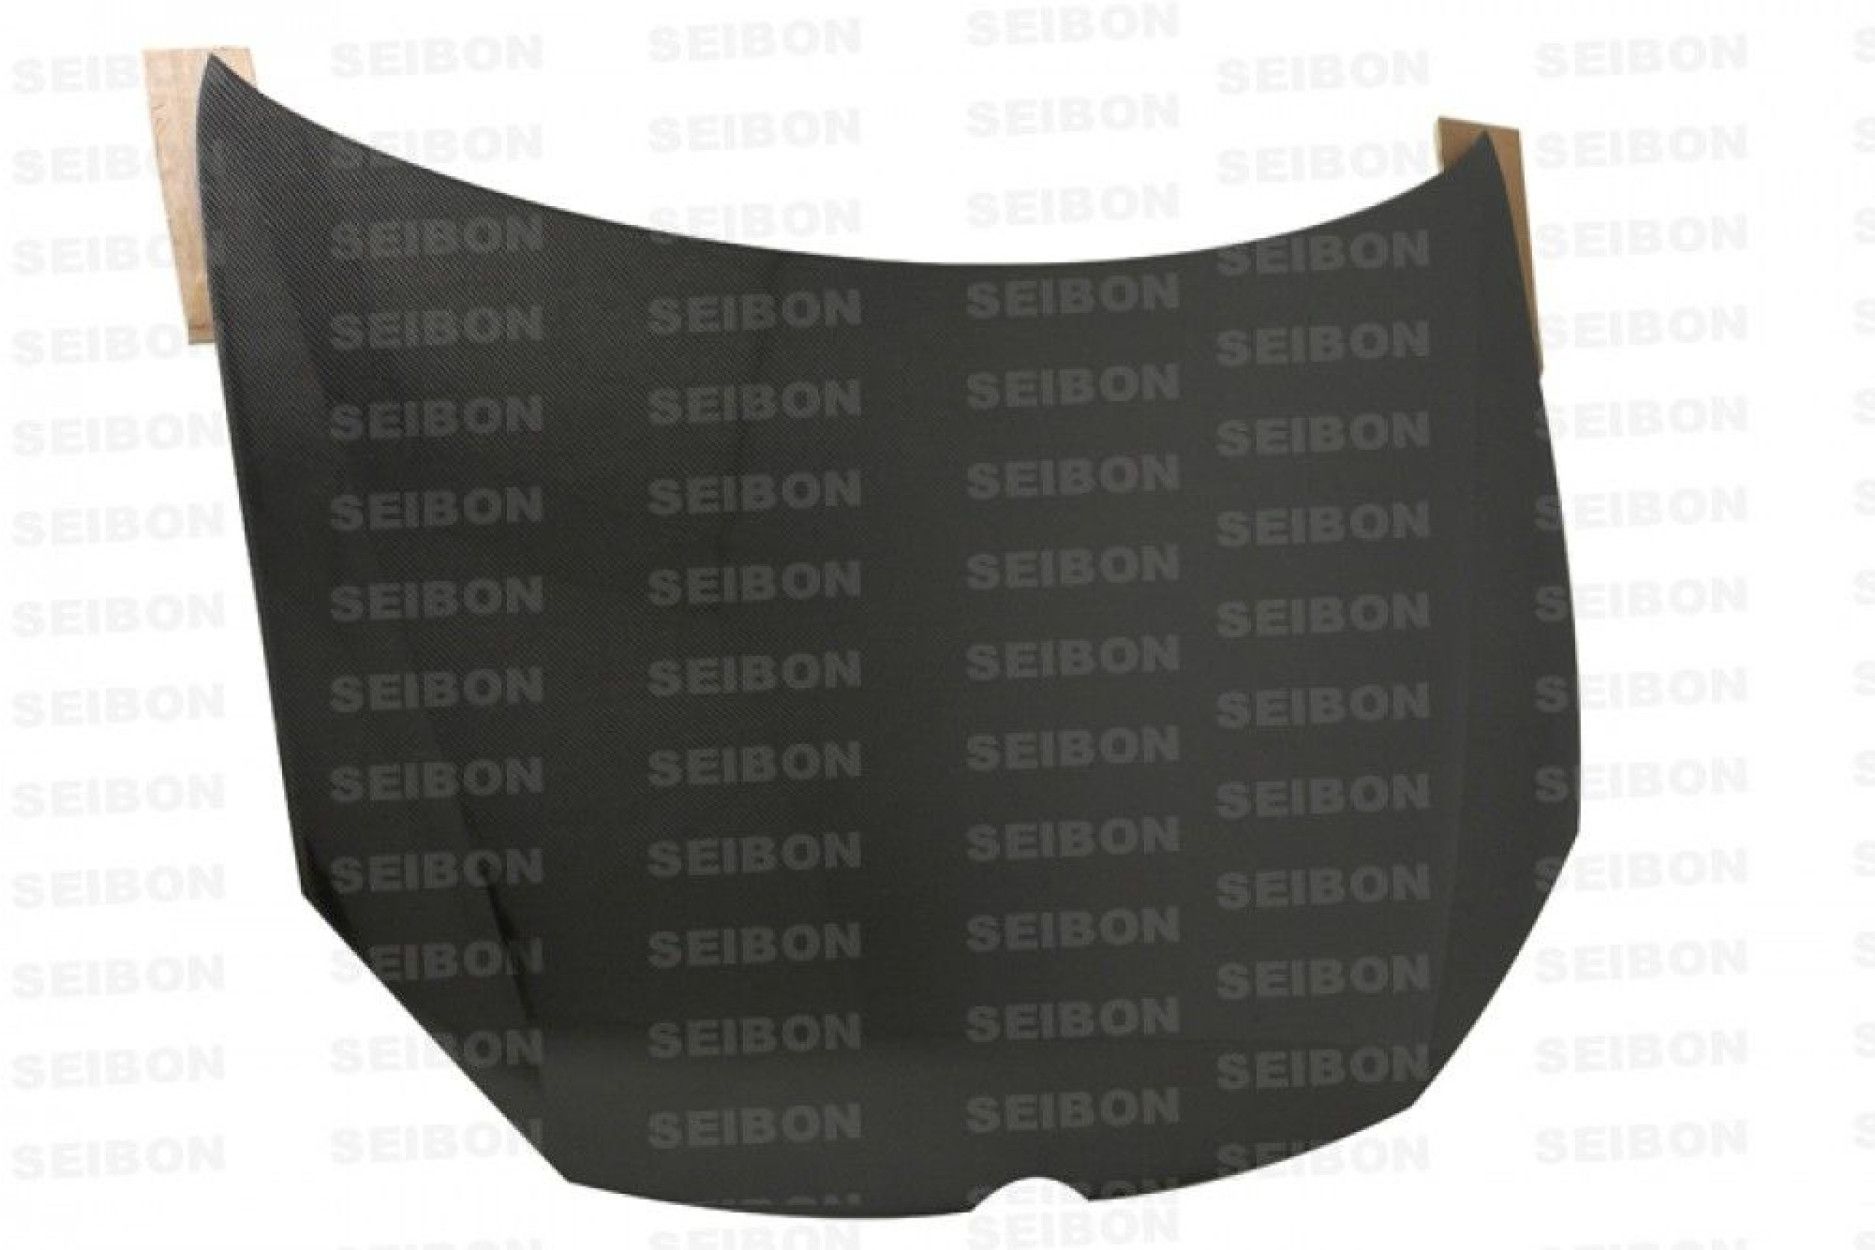 Seibon Carbon Motorhaube für VW Golf 6 und GTI 2010 - 2014 OE-Style